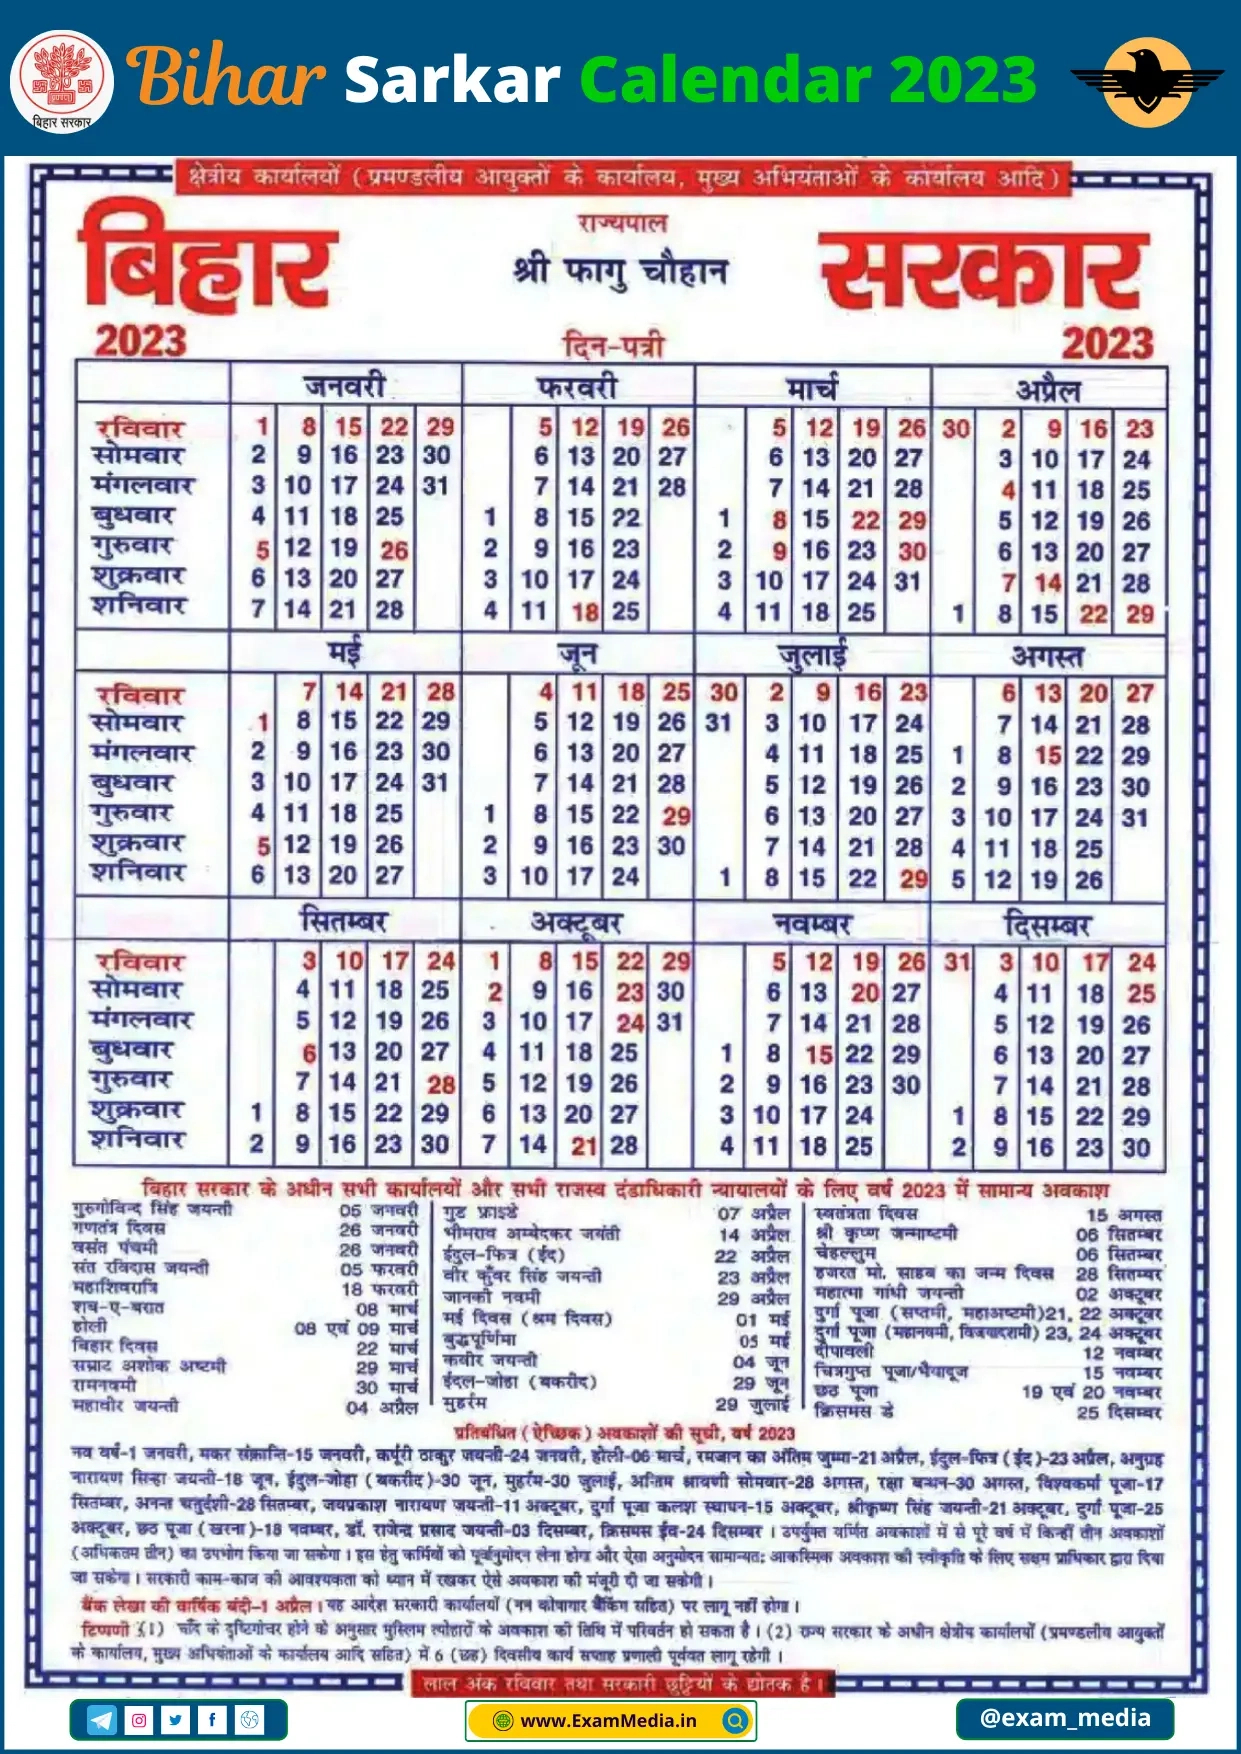 Bihar Sarkar Calendar 2023 Pdf - Check Bihar Government Holidays | Printable Calendar 2024 Bihar Sarkar